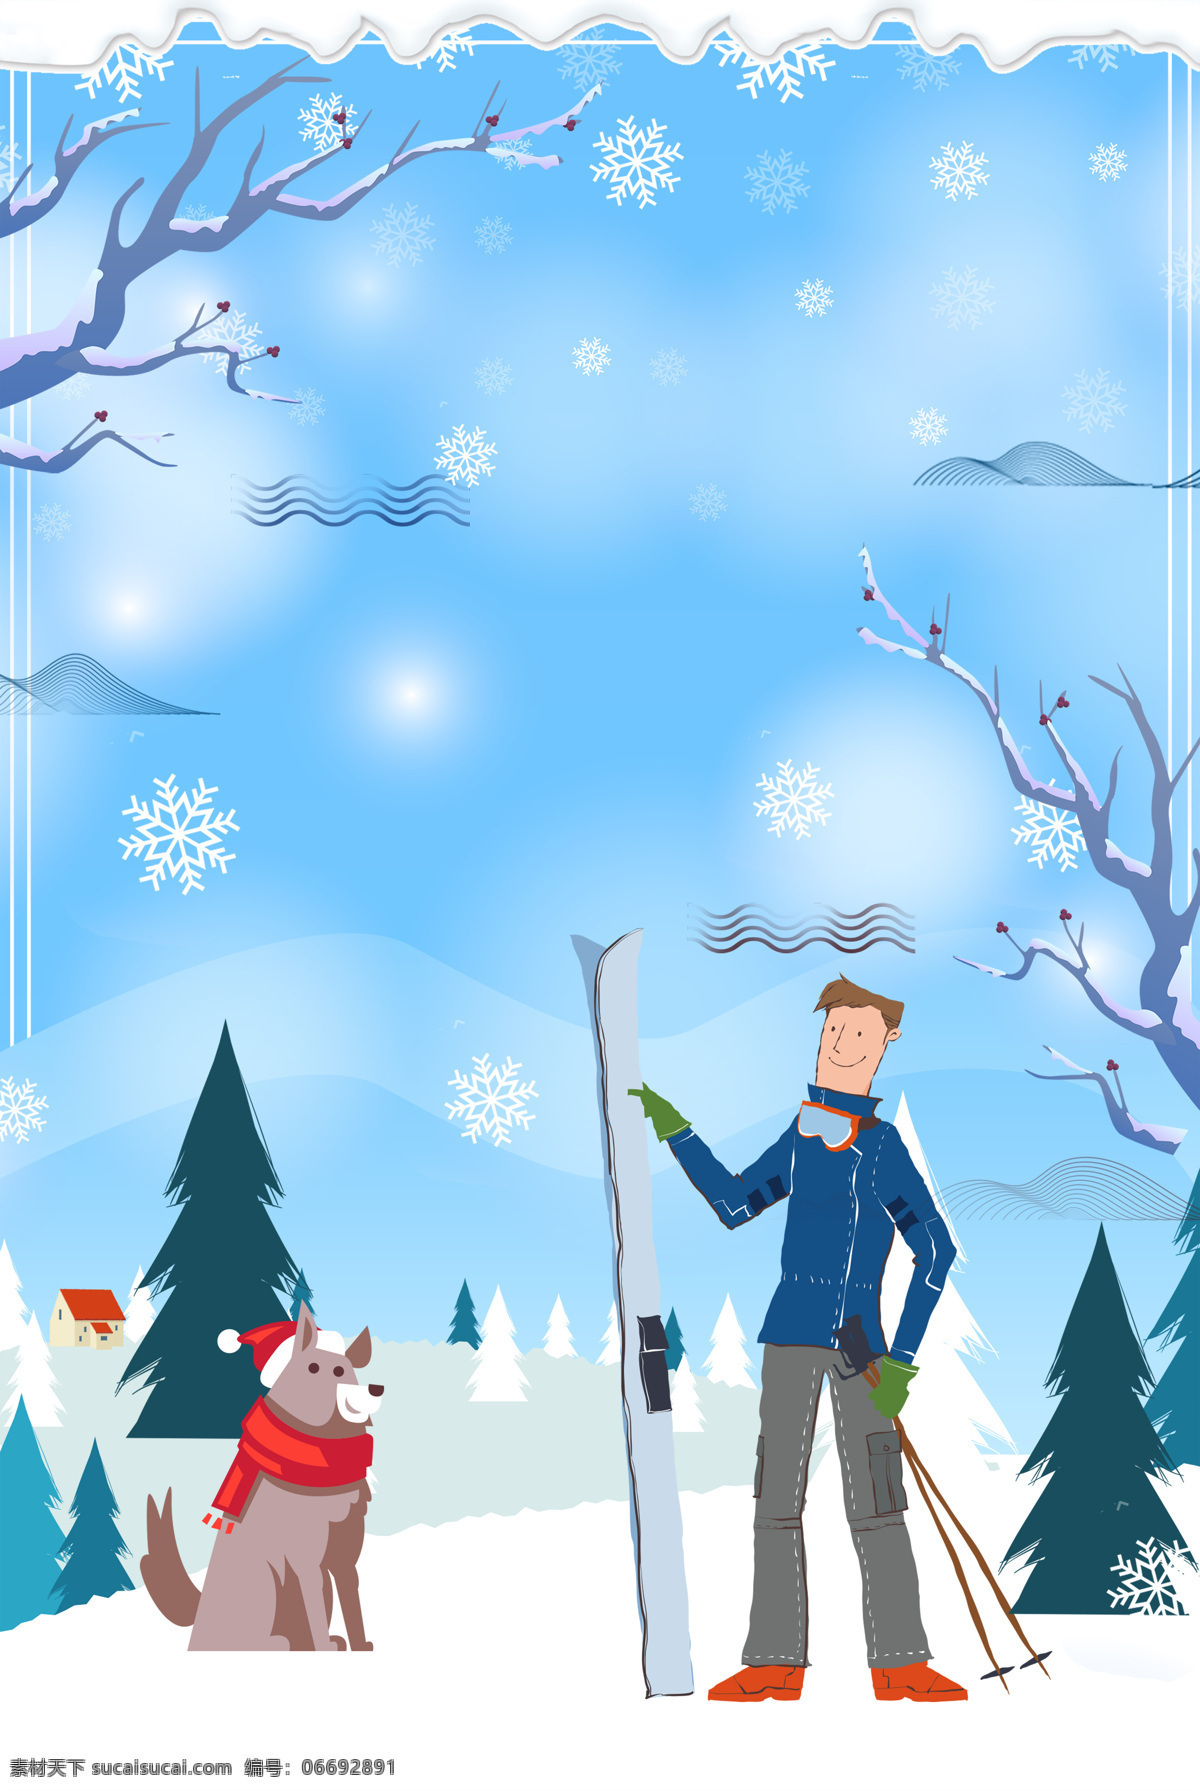 卡通 冬季 滑雪 广告 背景 白云 广告背景 蓝天 下雪 小狗 雪景